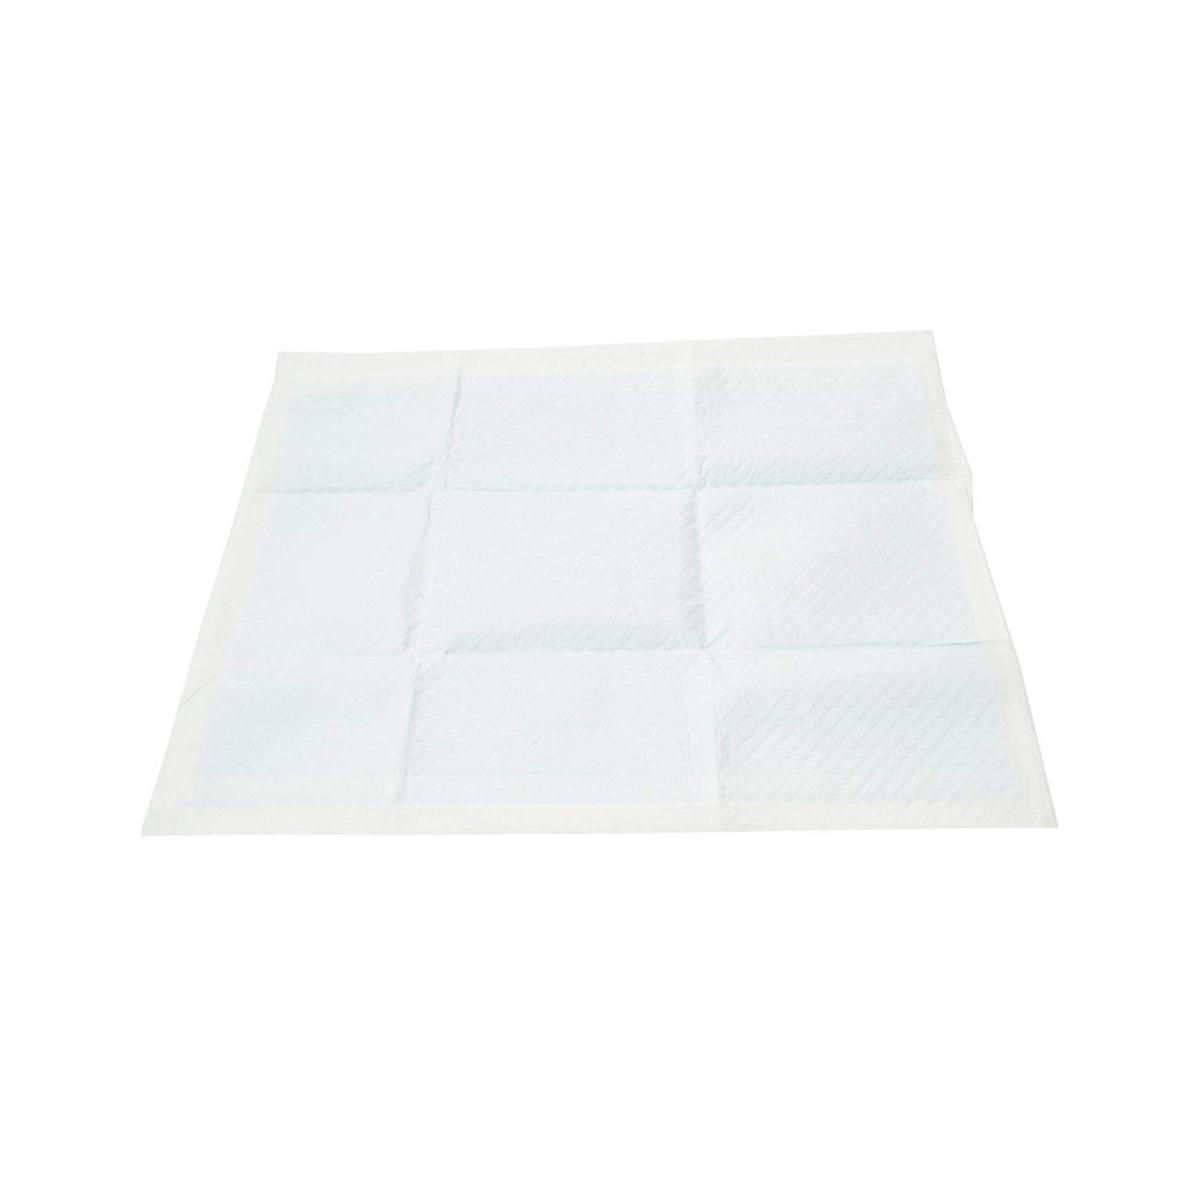 60 tapis absorbants - L 60 xl 45 cm - Blanc